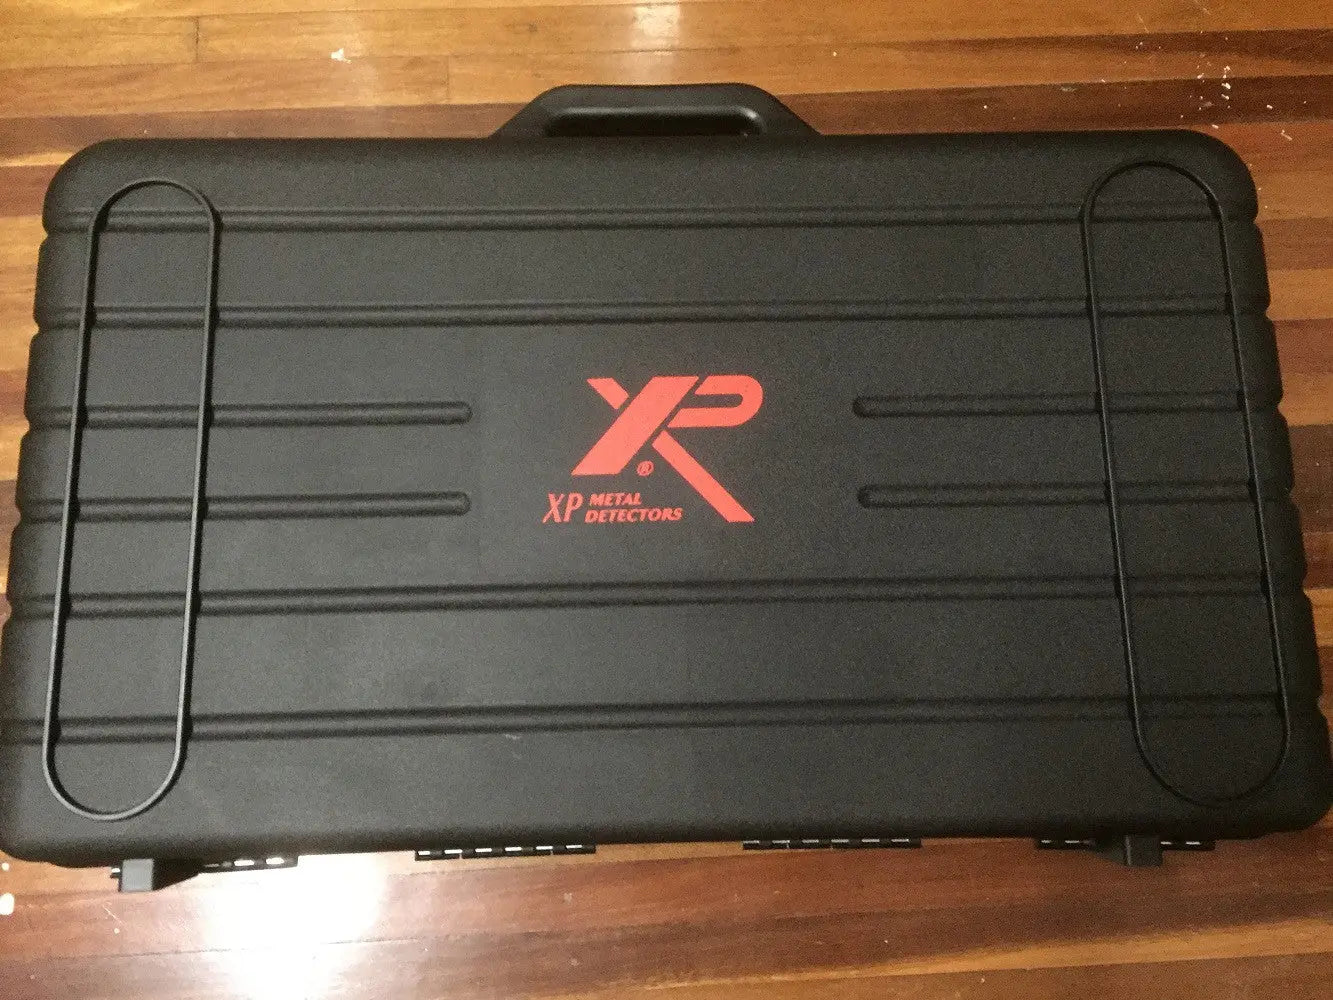 XP Detectors Hard Travel case for your XP Deus. LionOx Distribution (XPAU)